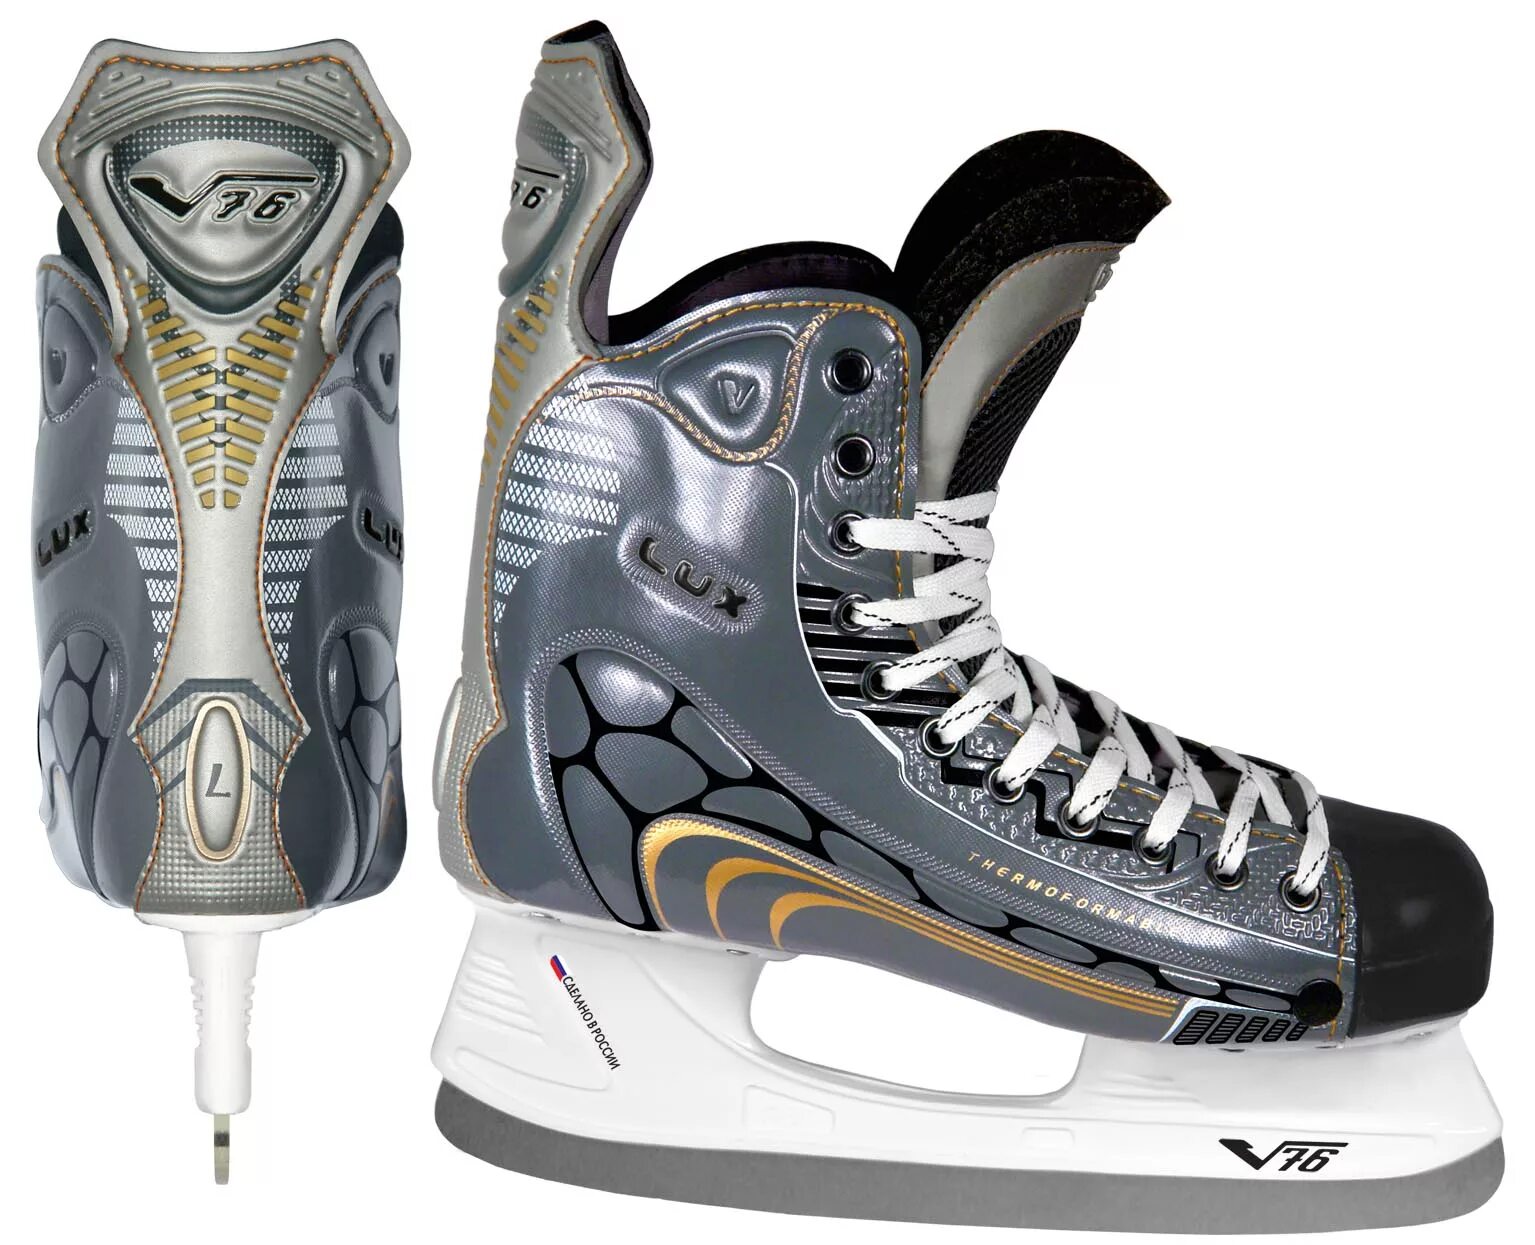 Хоккейные коньки v76 Lux-p. Коньки v76 encelad. Коньки хоккейные v76 Pro. Хоккейные коньки v76 Lux-s.